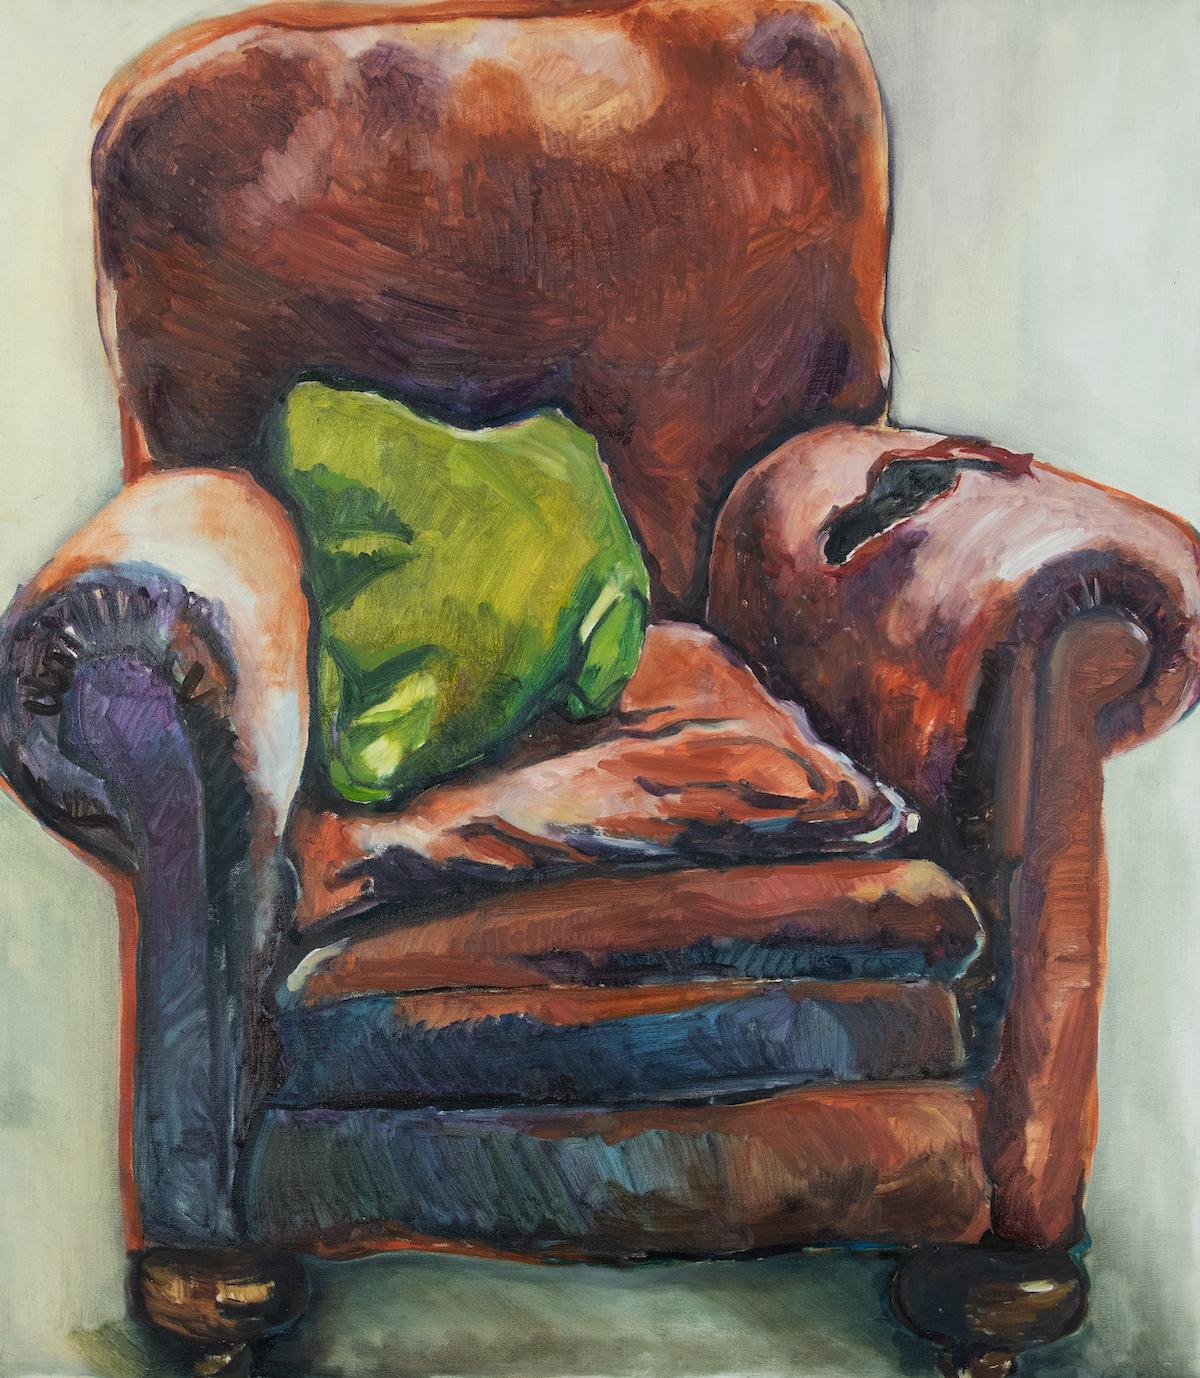 Der Sessel von Annabel Daou (geb. 1967)
Öl auf Leinwand
116,5 x 102 cm (45 ⁷/₈ x 40 ¹/₈ Zoll)
Rückseitig signiert, Annabel Pissarro

Provenienz
Direkt bei der Künstlerin gekauft

Ein sehr frühes Werk dieses bedeutenden libanesischen Künstlers, der